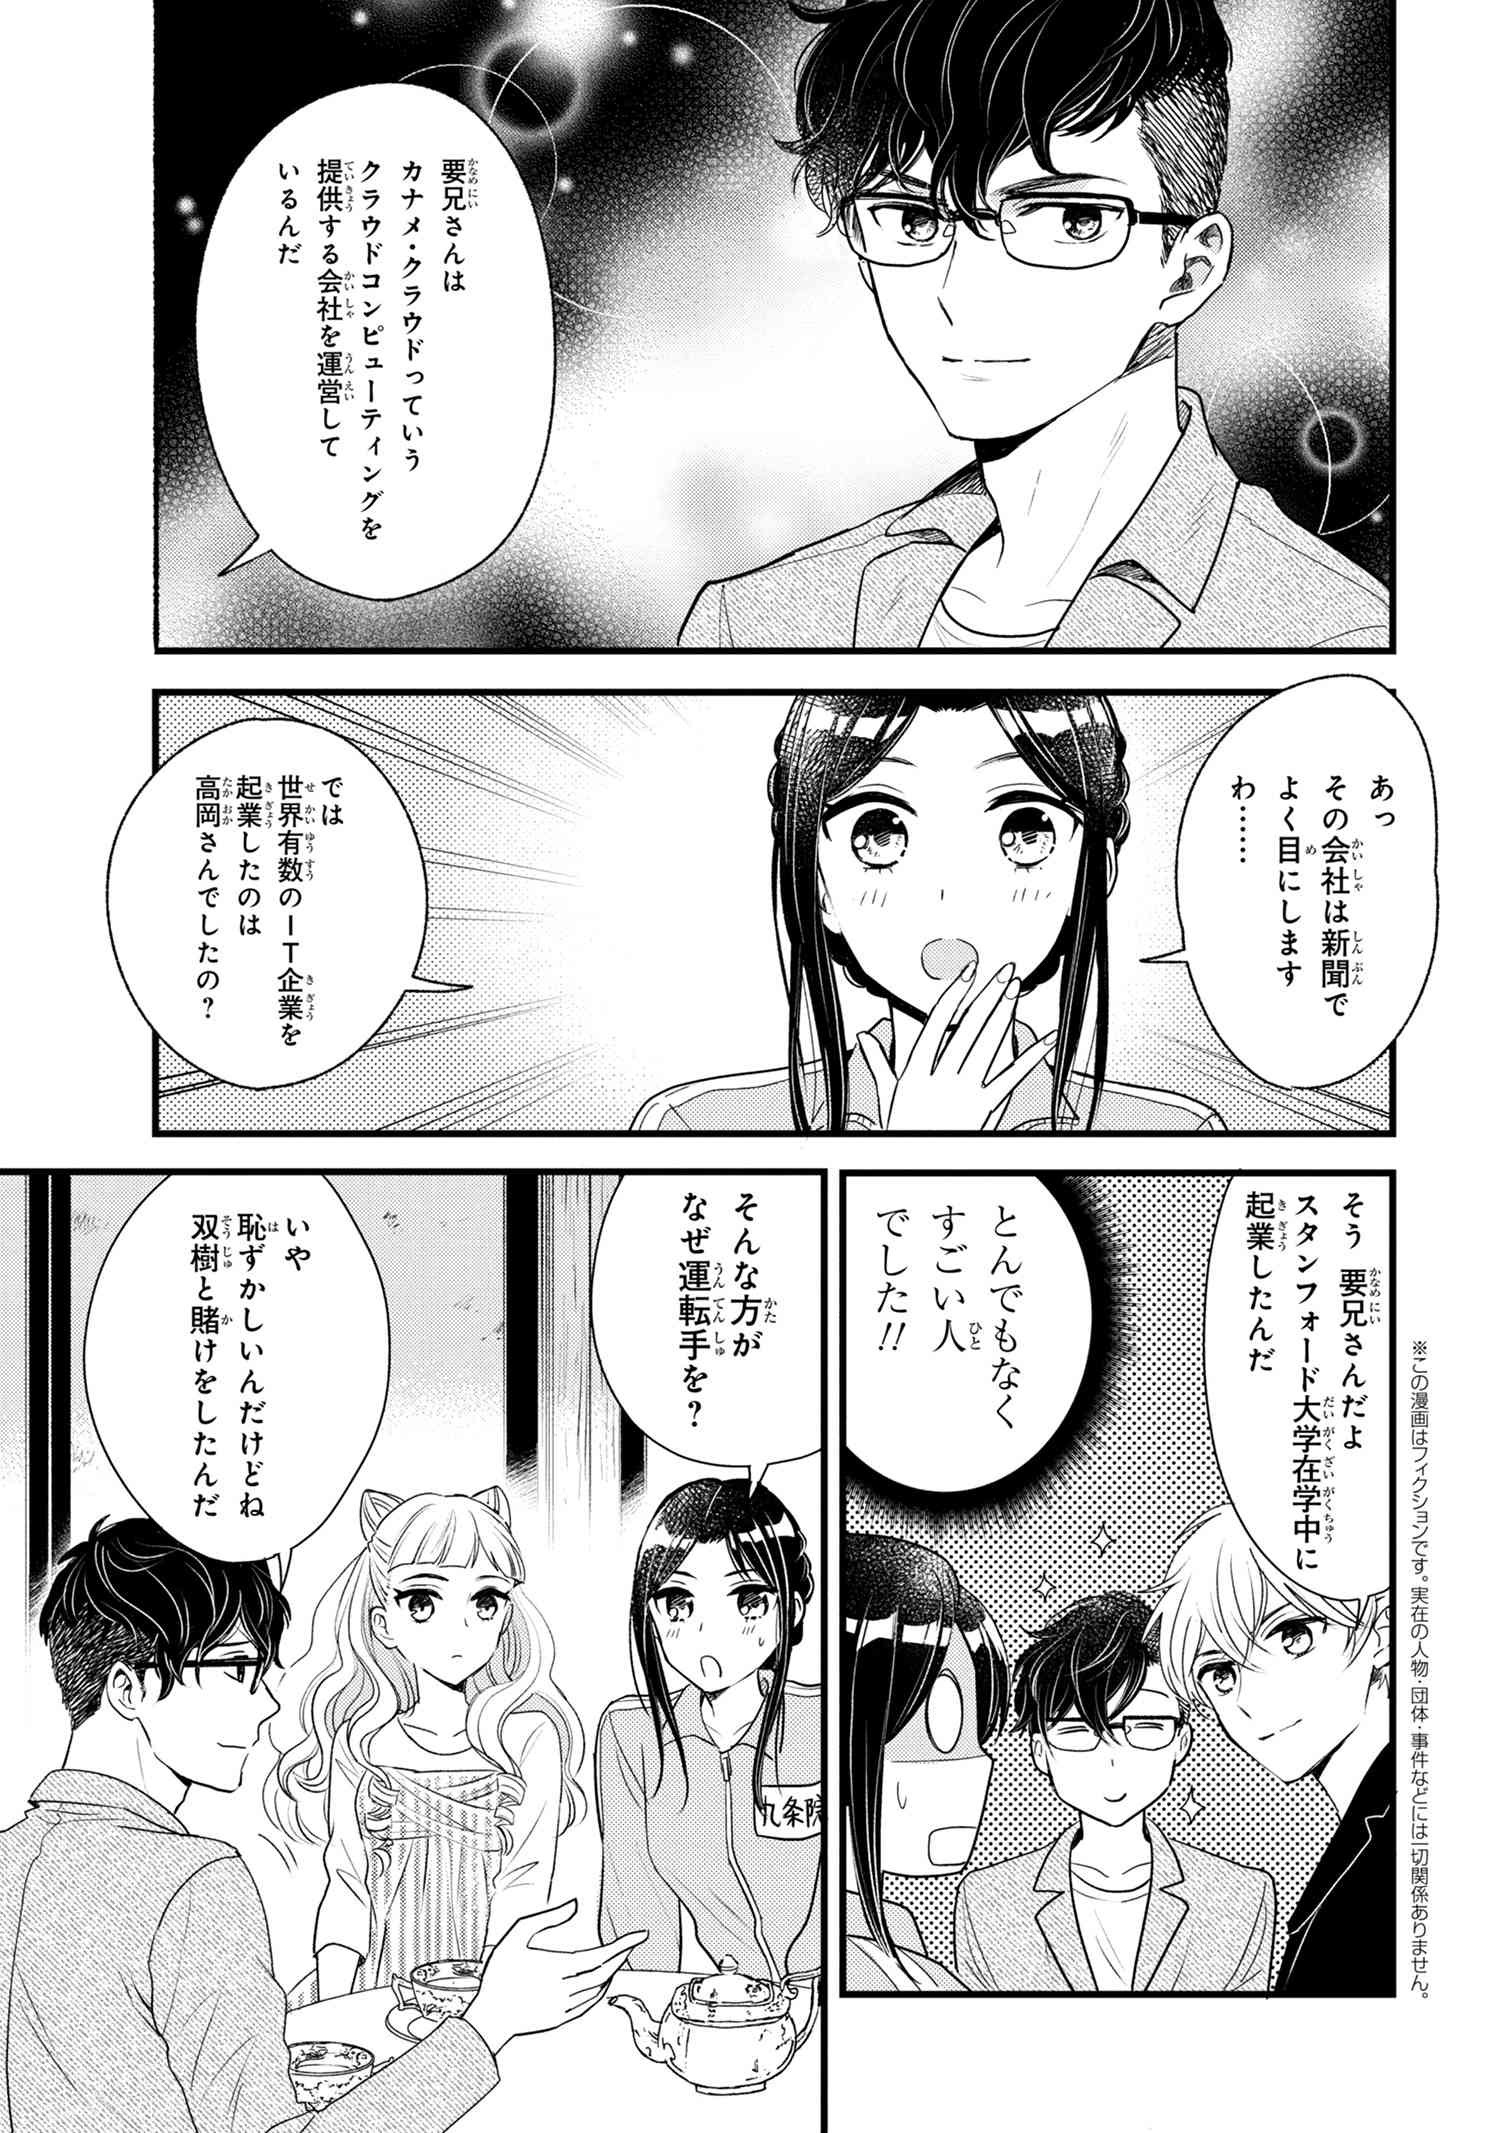 Reiko no Fuugi Akuyaku Reijou to Yobarete imasu ga, tada no Binbou Musume desu - Chapter 6-5 - Page 1